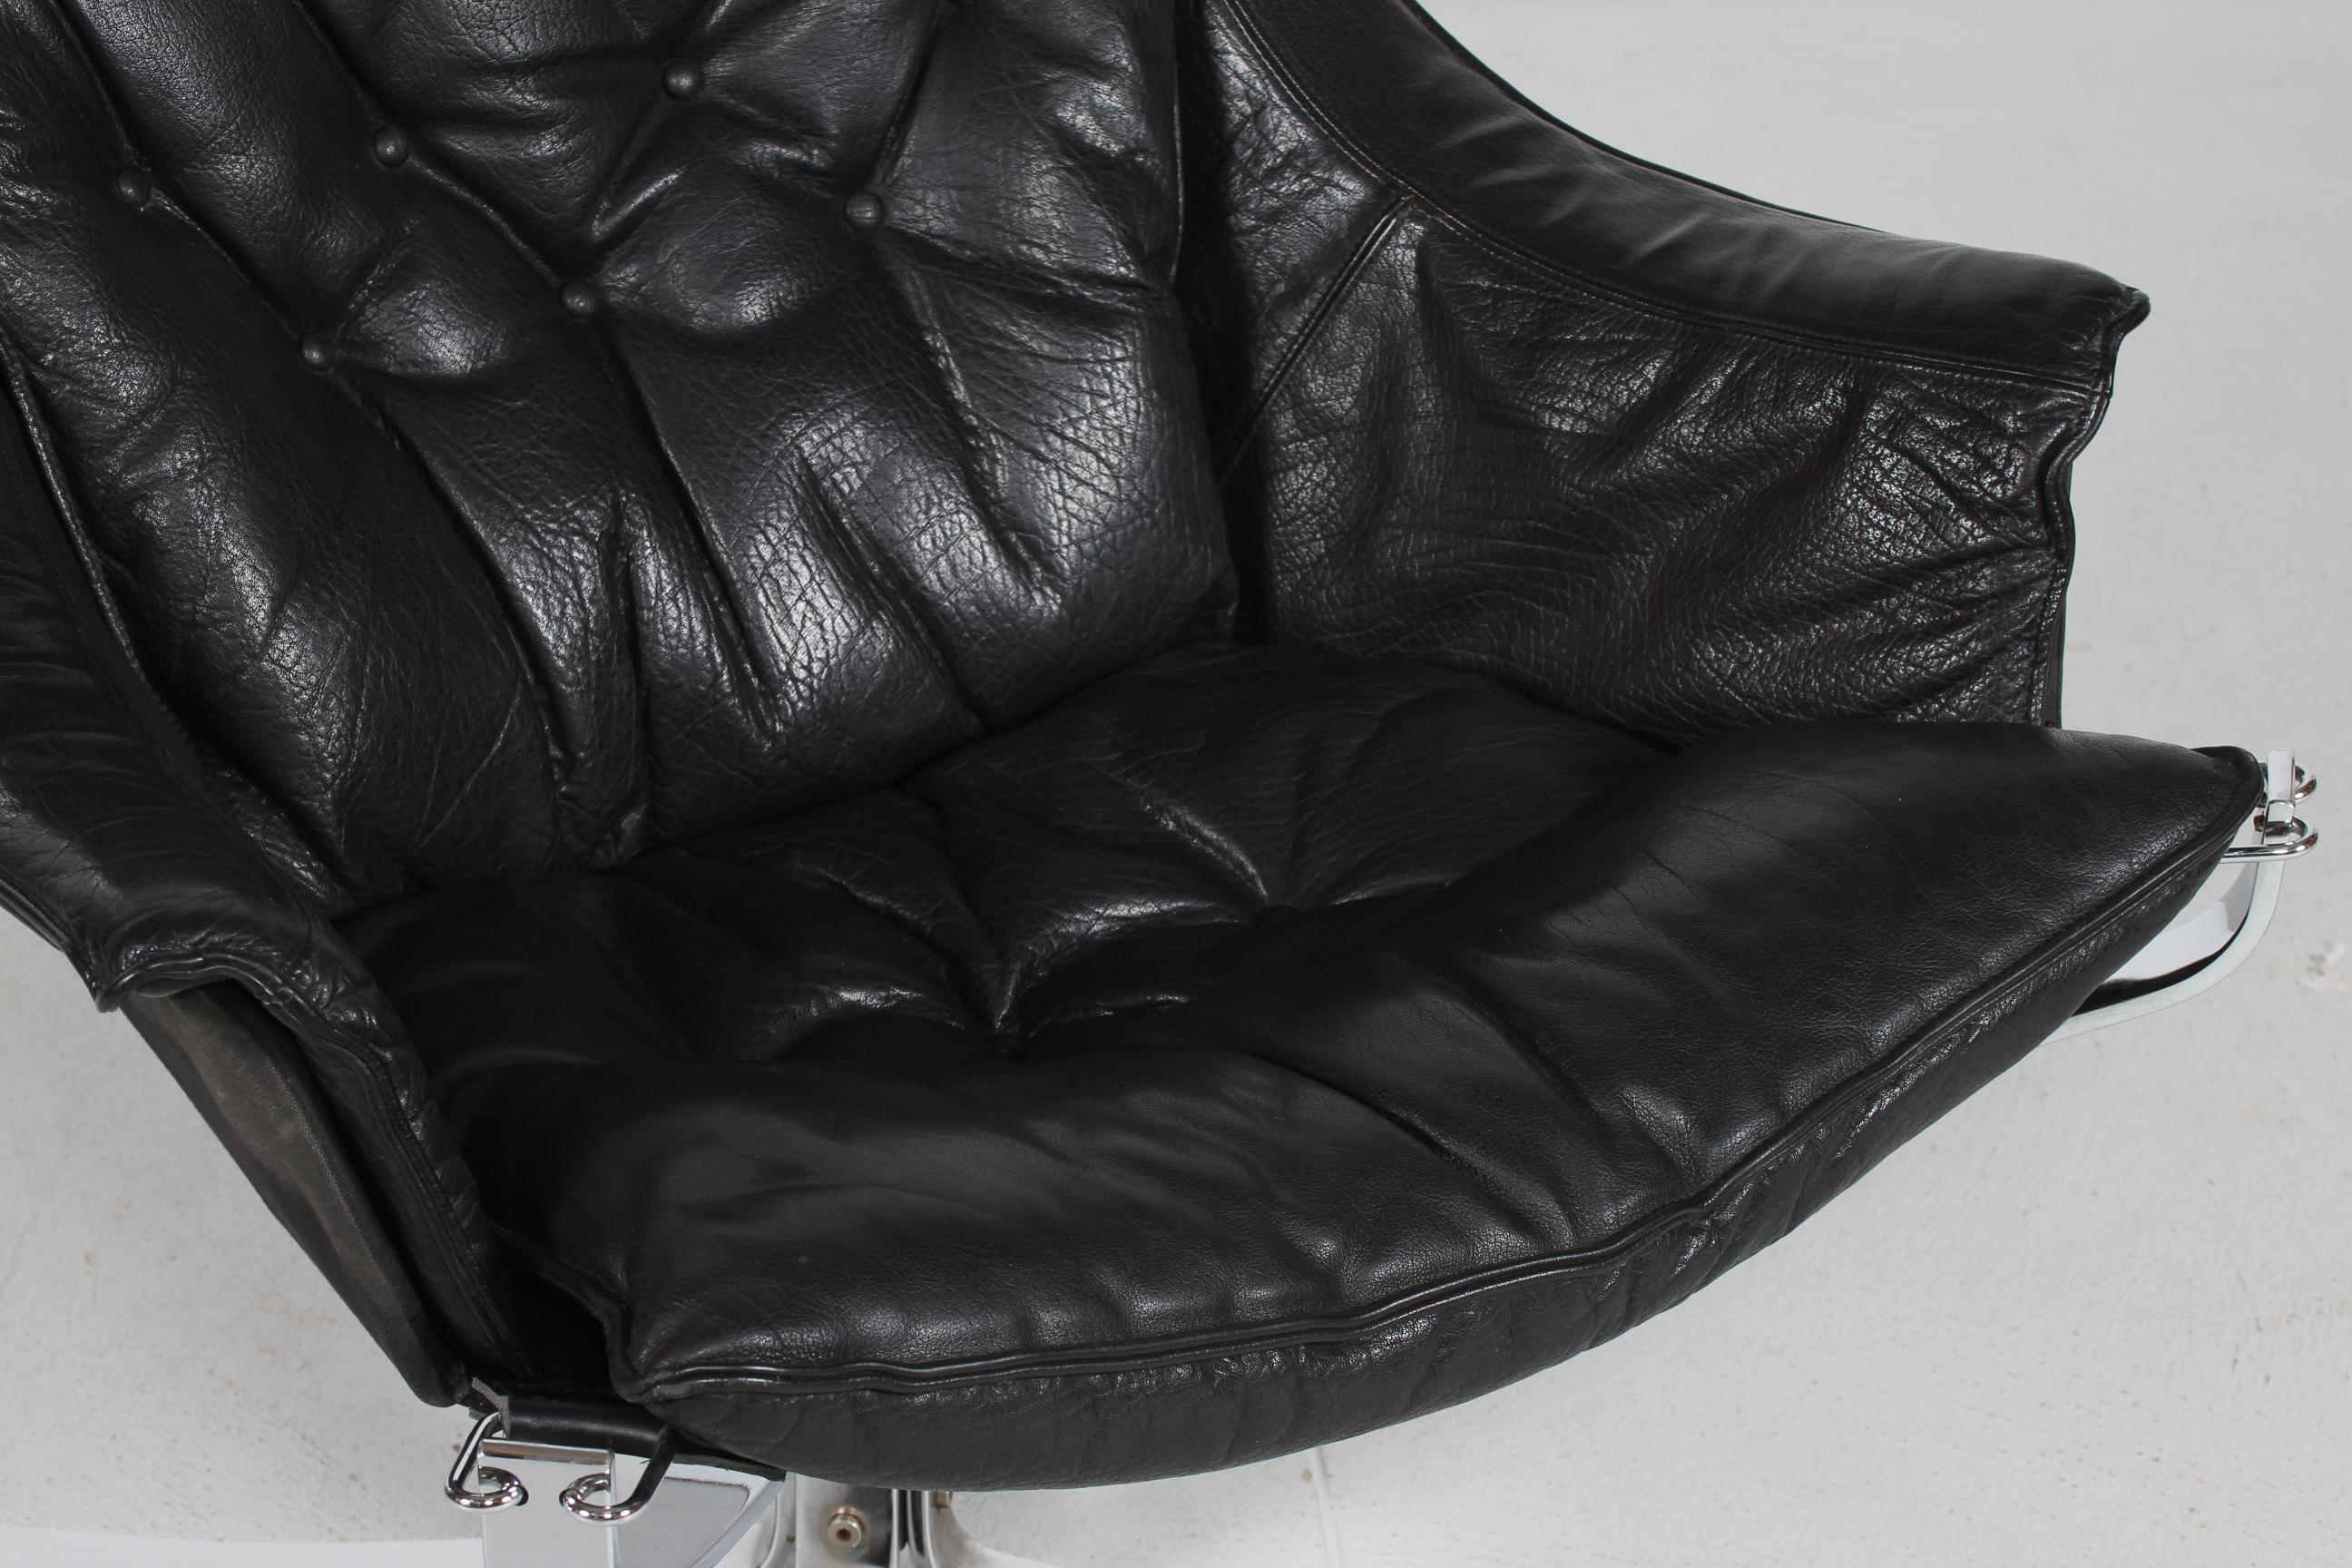 Seltener Falcon-Sessel mit Armlehne und Chromstahlgestell.
Die Kissen sind mit echtem, schwarzem Leder in sehr guter und fester Qualität gepolstert.
Der Stuhl wurde in den 1970er Jahren vom schwedischen Unternehmen Vatne Møbler hergestellt.